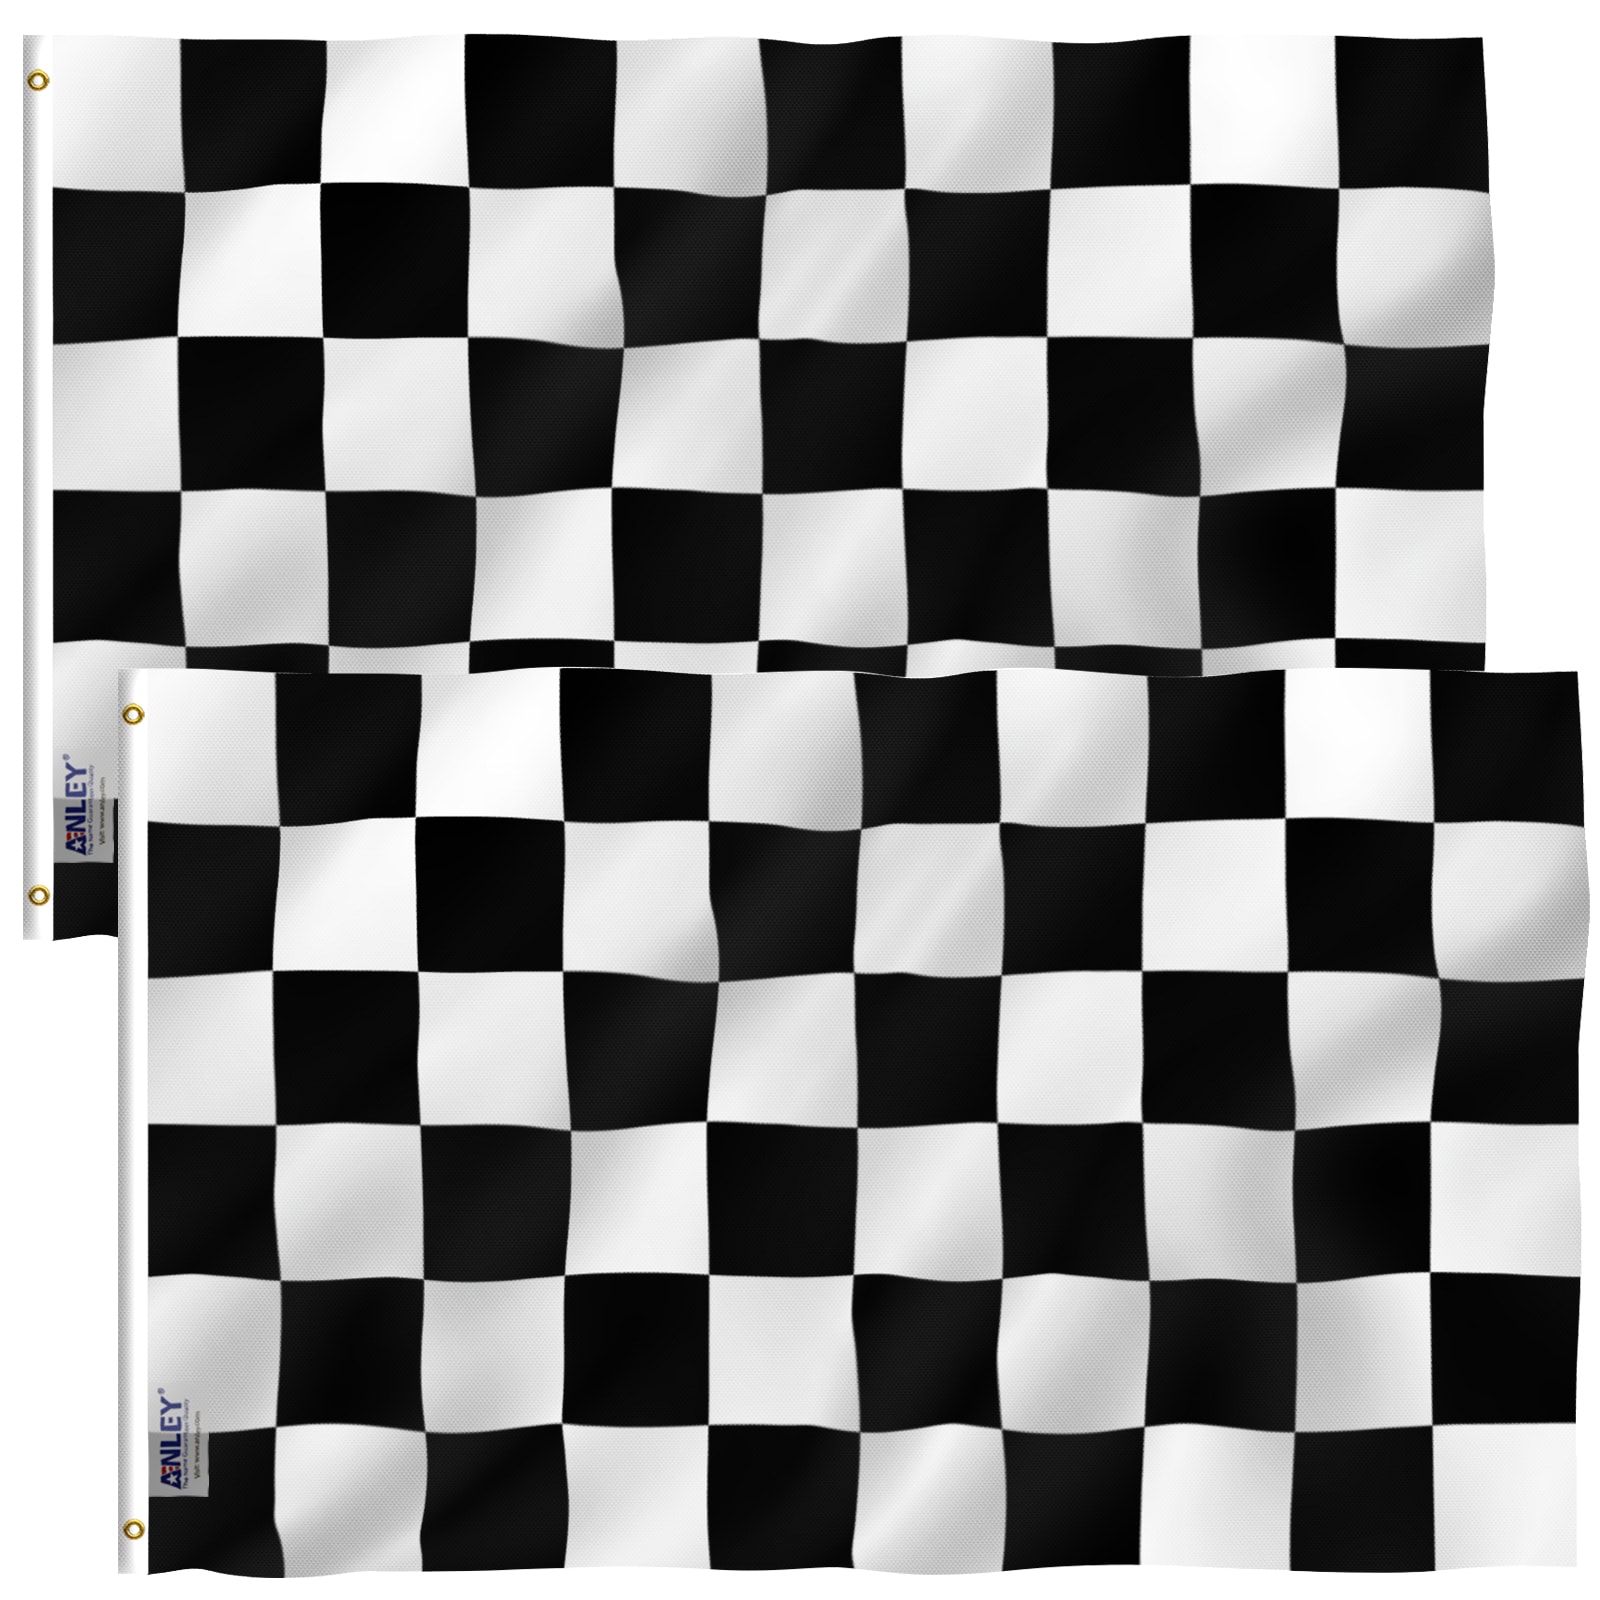 New Black White Checkered Flag Racing Finish Flag ON 14g Black Belly Ring KEZ-175 